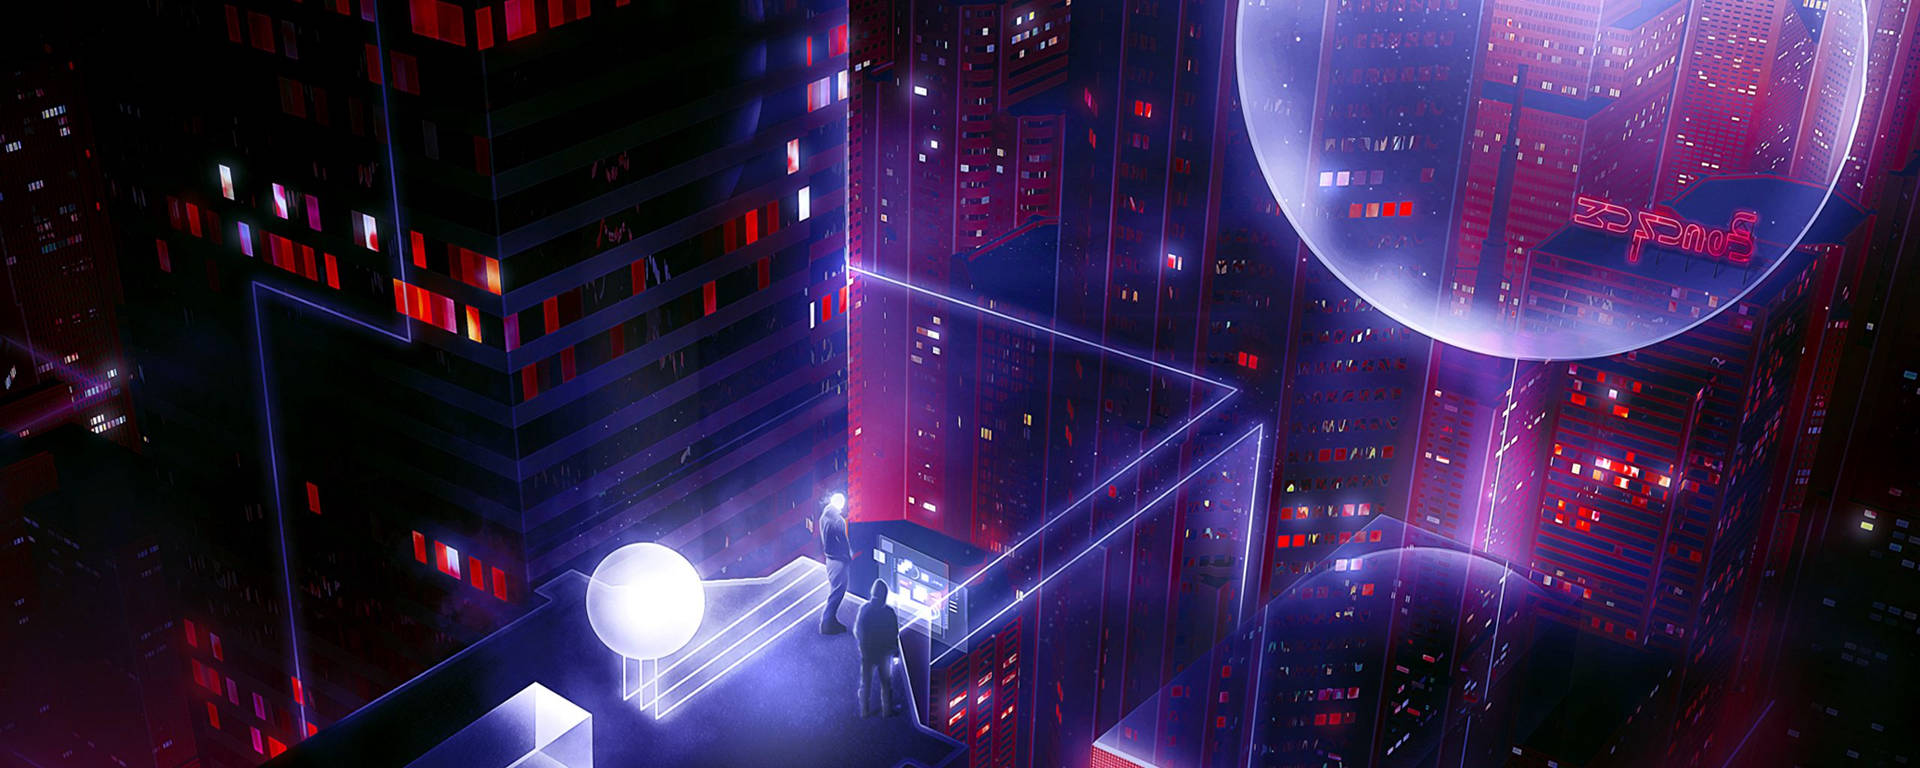 Ultrawide Cyberpunk Night City Buildings Wallpaper